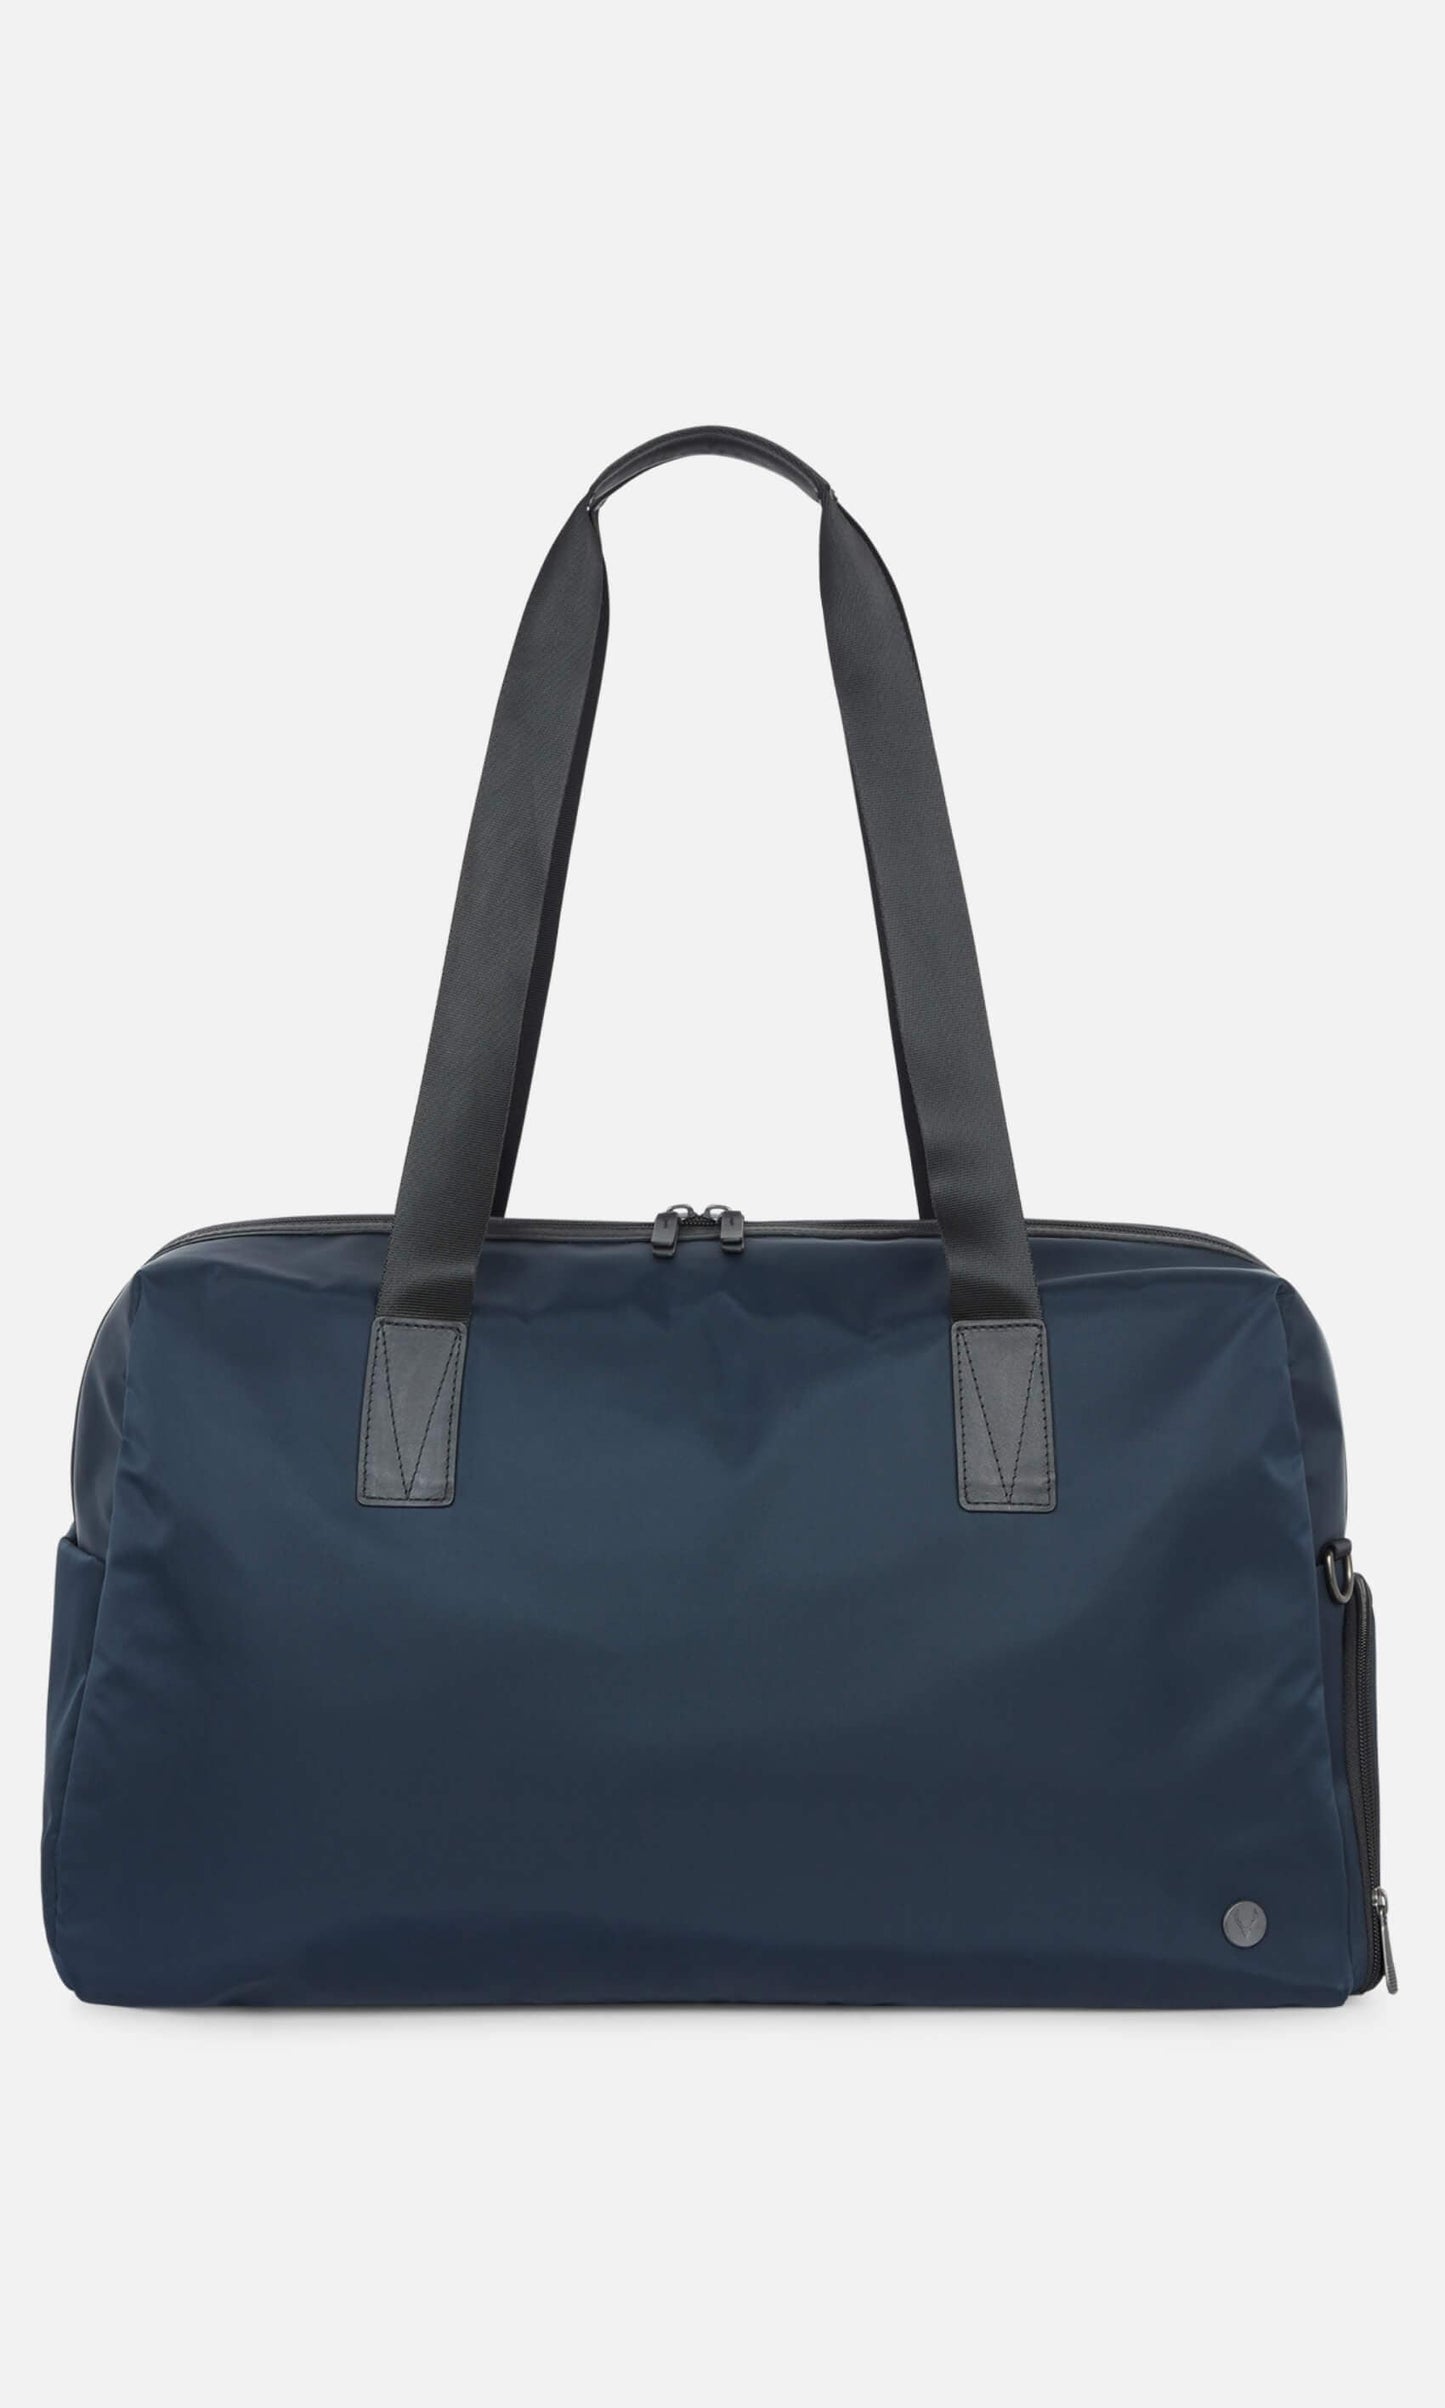 Antler Luggage -  Chelsea weekender in navy - Weekend bags Chelsea Weekend Bag Navy | Travel Bags | Antler UK